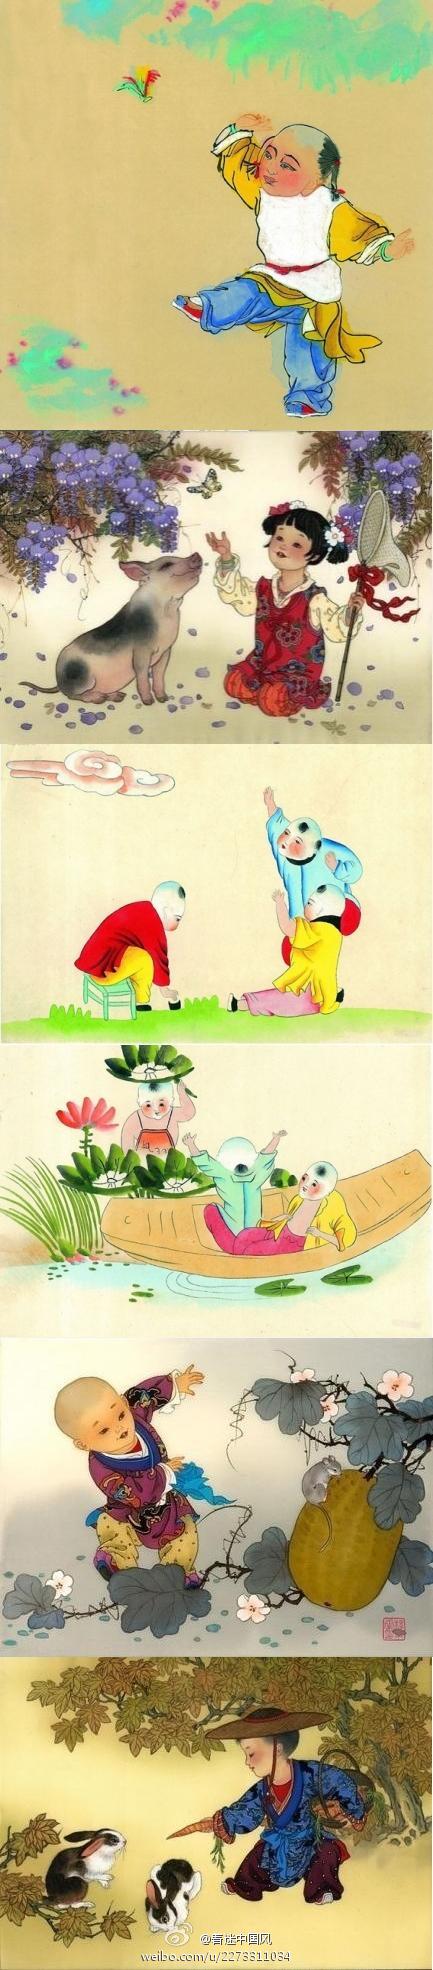 【古代儿童节--上巳节】中国的上巳节(农历三月三),来源悠久.